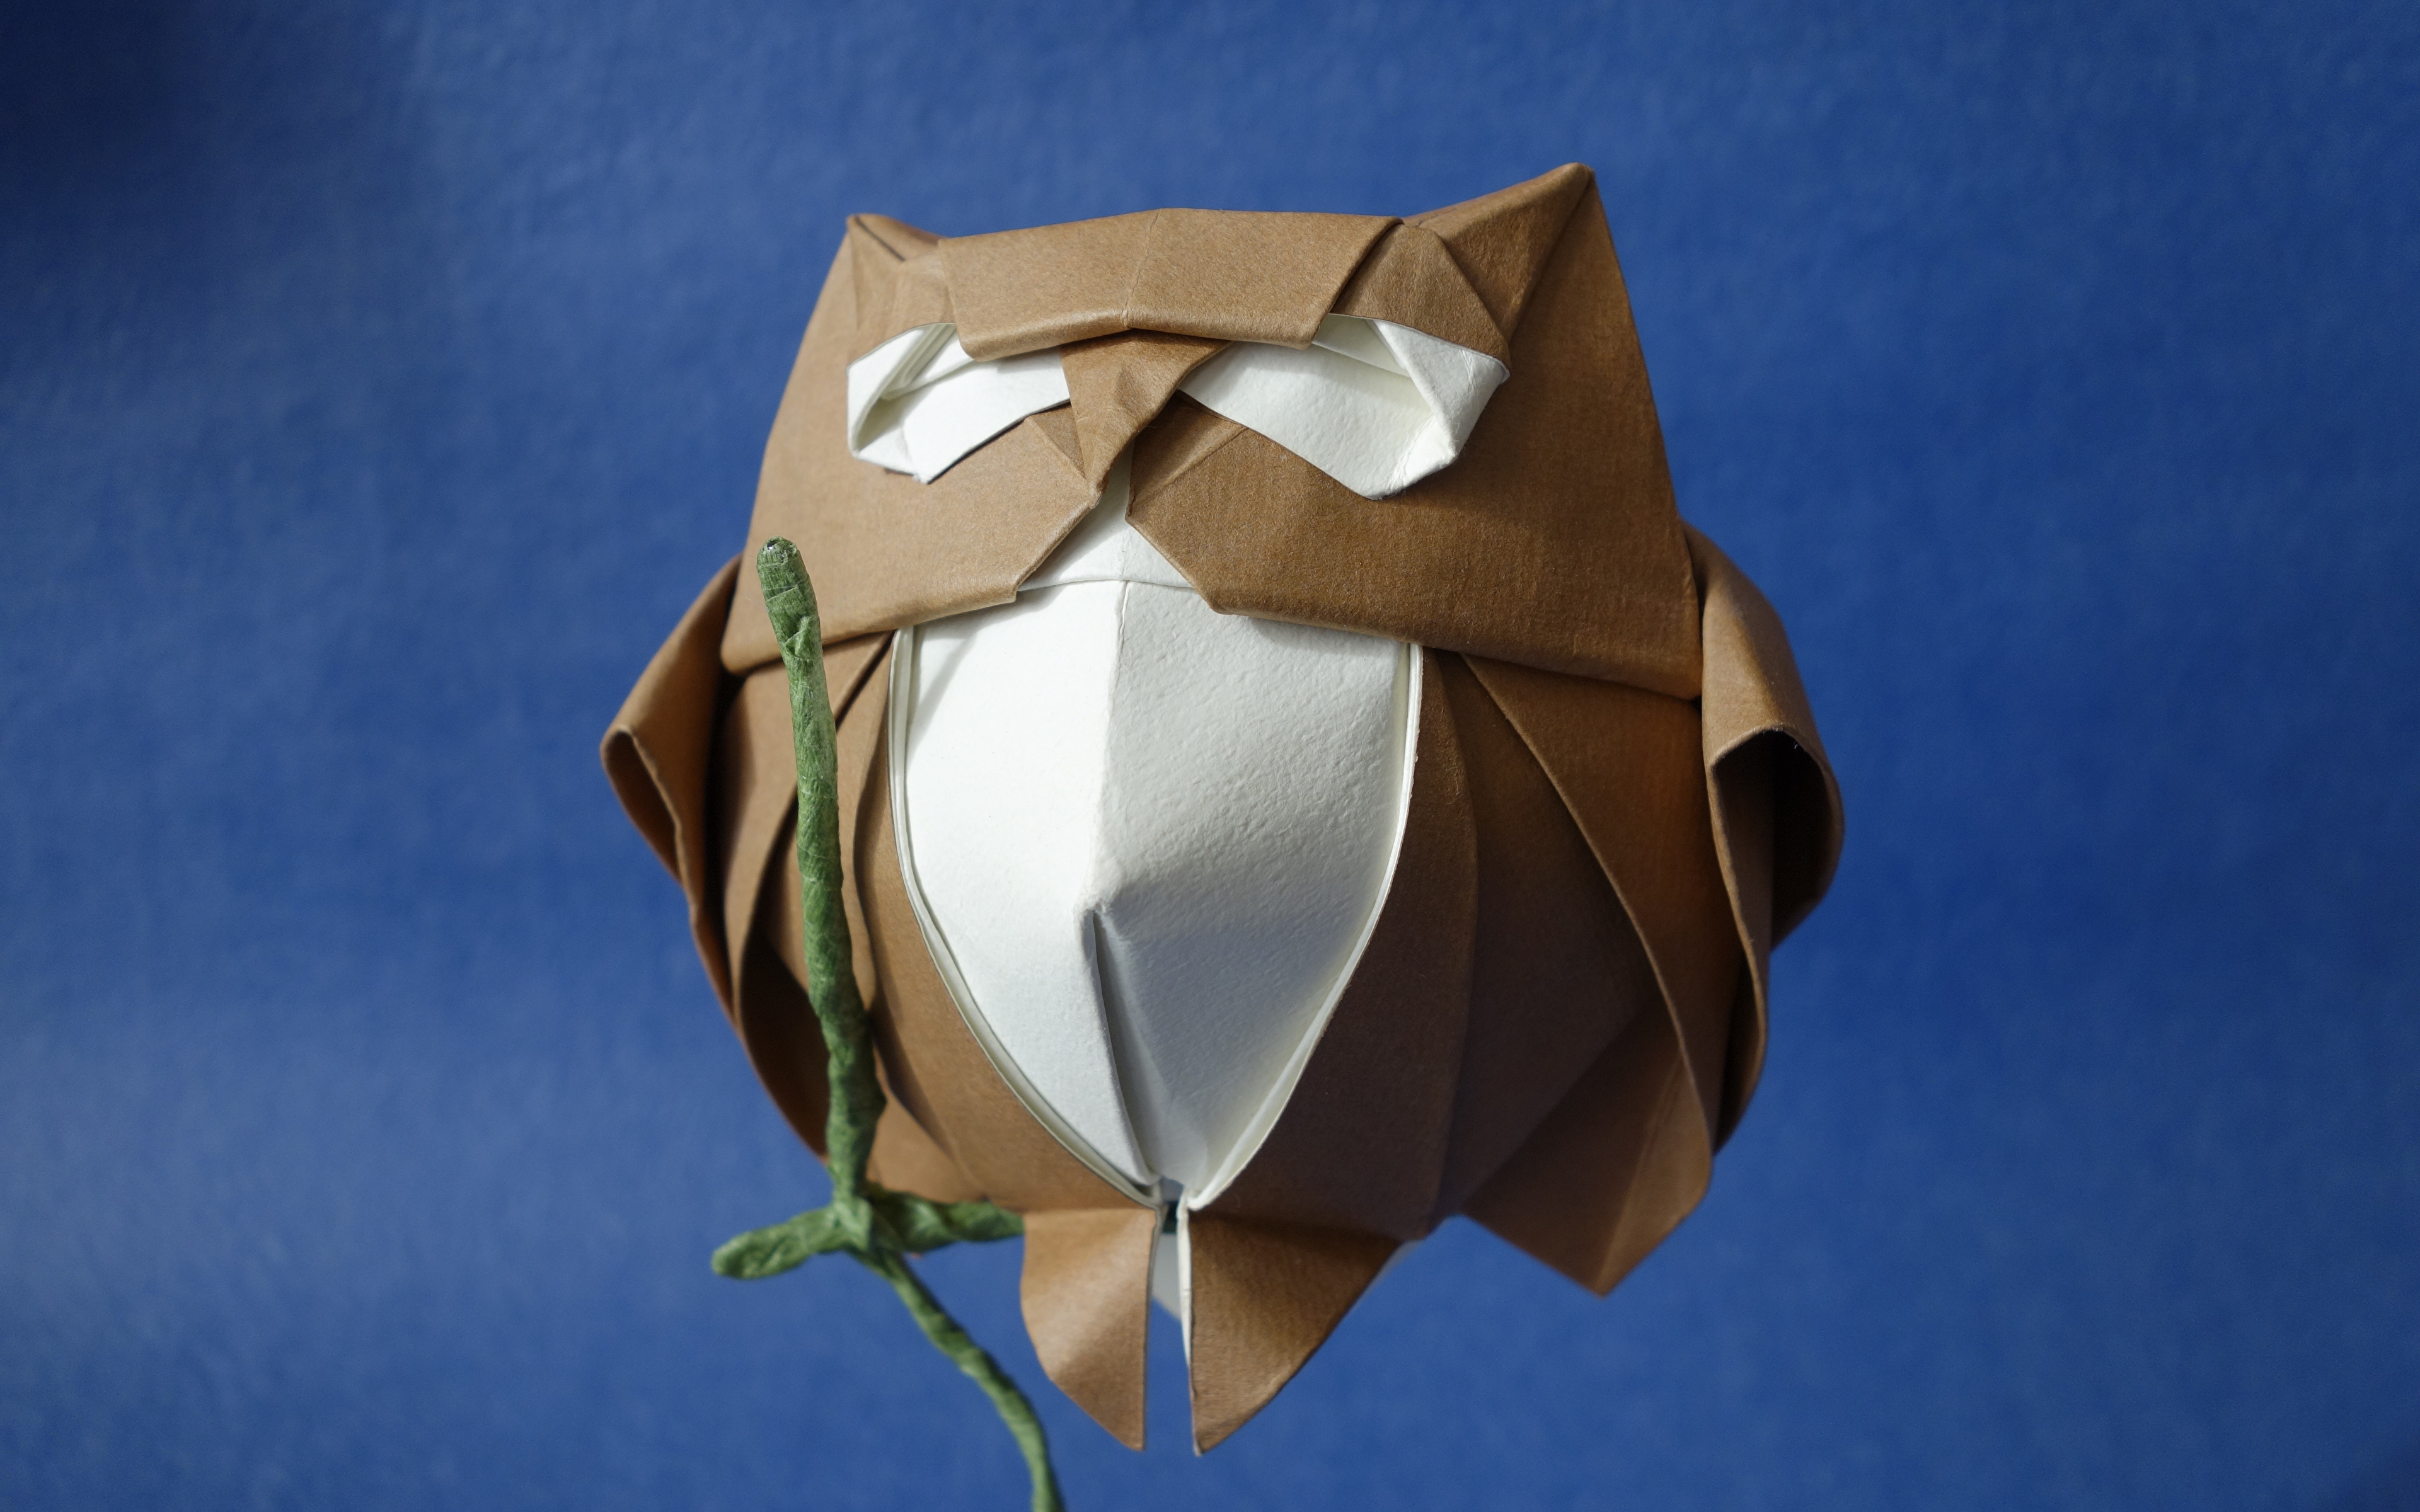 ふくろう 折り紙 簡単折り紙 フクロウ の折り方 How To Fold Origami Owl